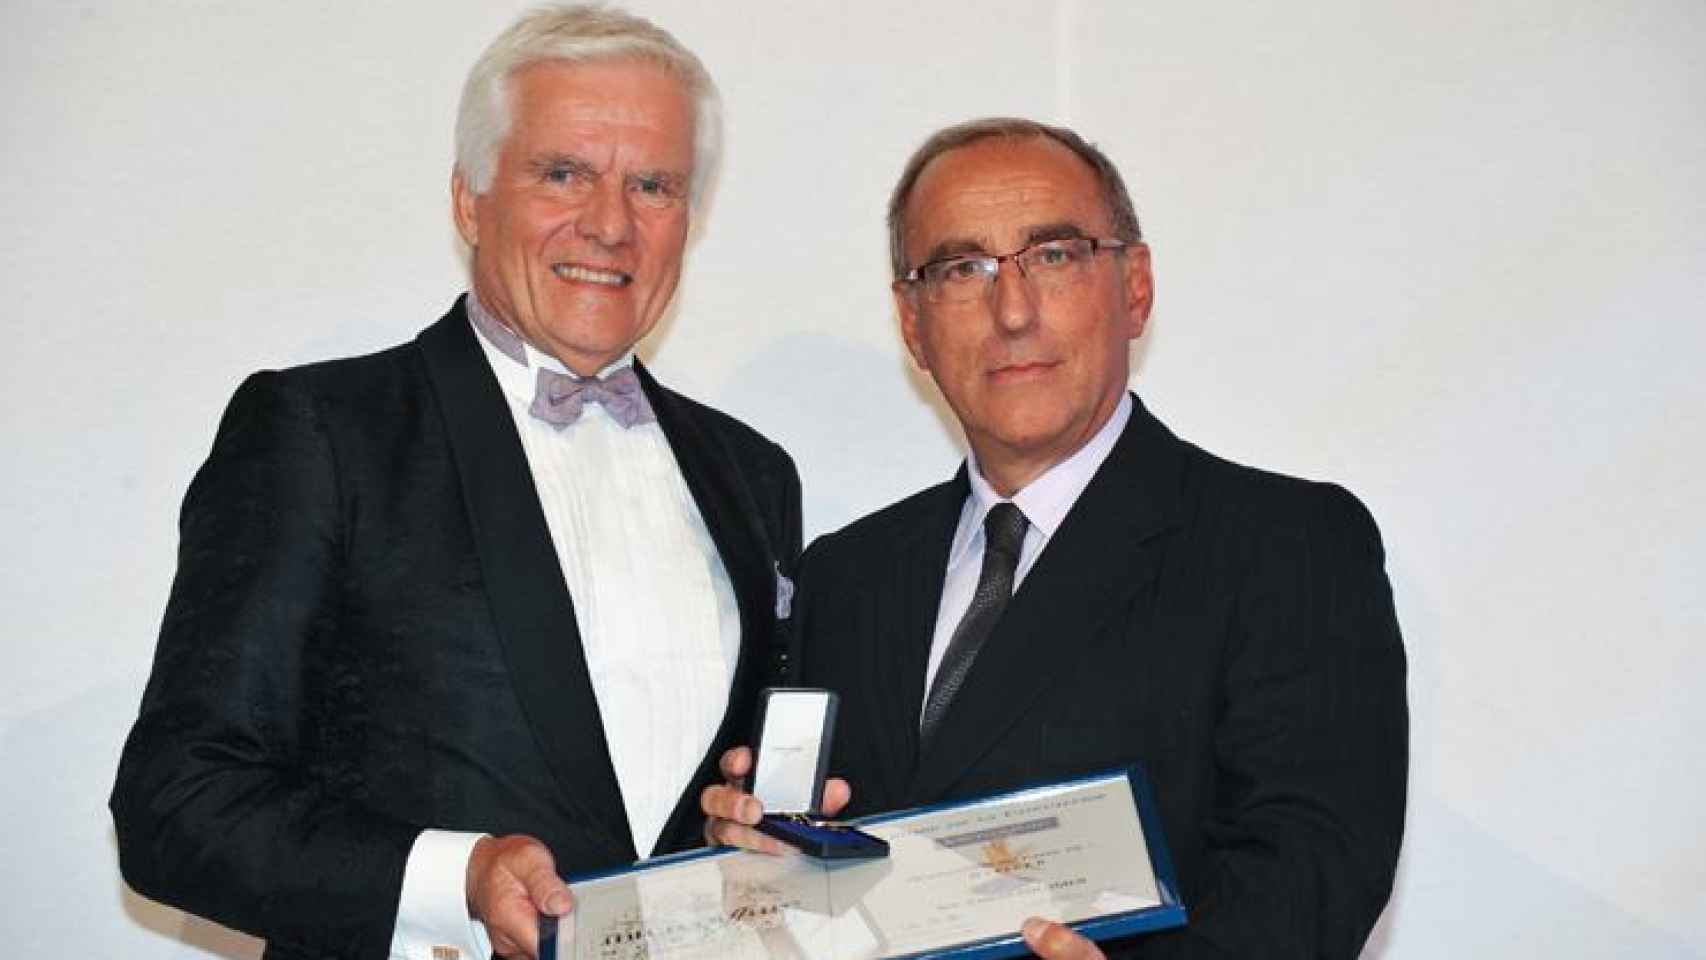 Carlos Colomer (d) recibe el título de la Orden de la Caballería de Intercoiffure de manos de Arild Martinsen en septiembre pasado